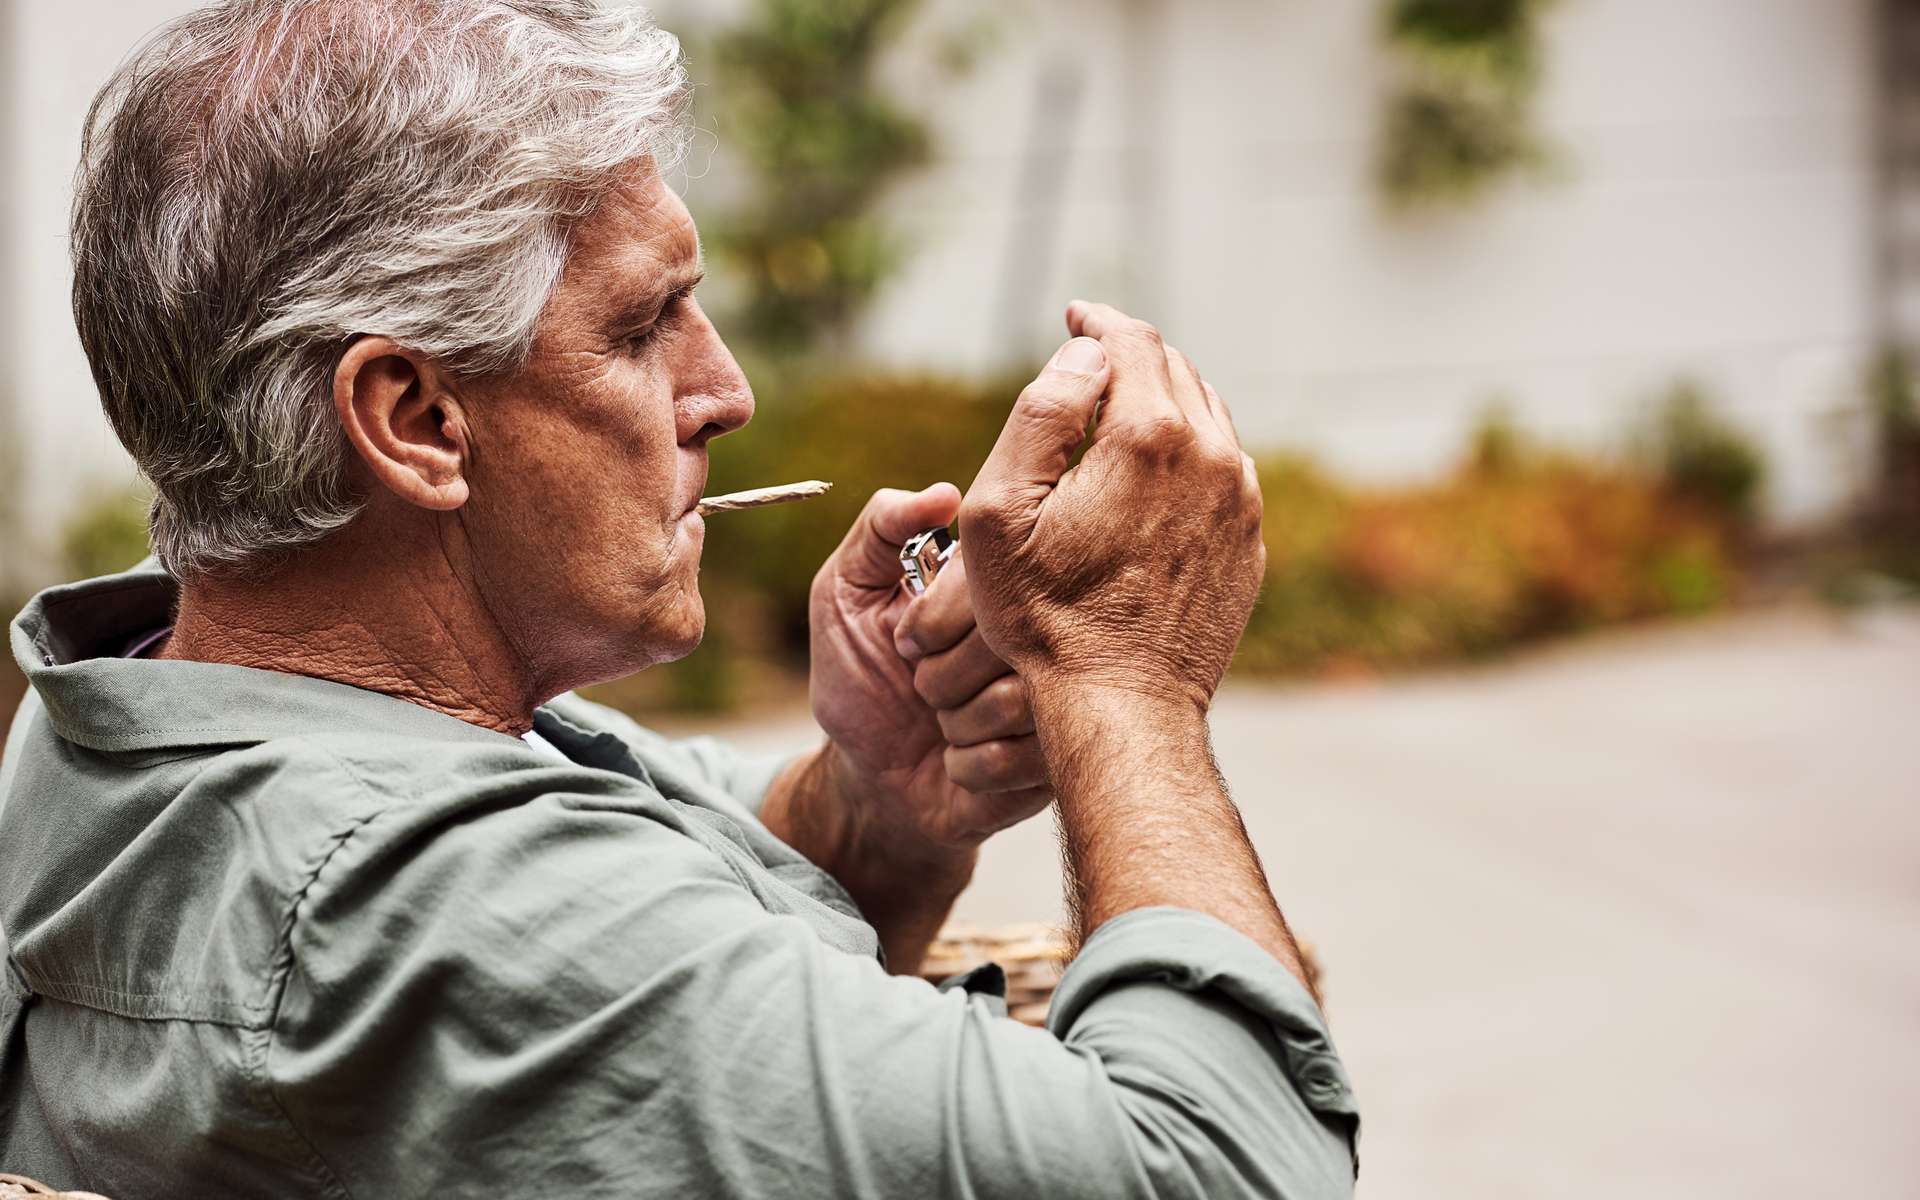 Le bénéfice étonnant du cannabis récréatif chez les plus de 45 ans